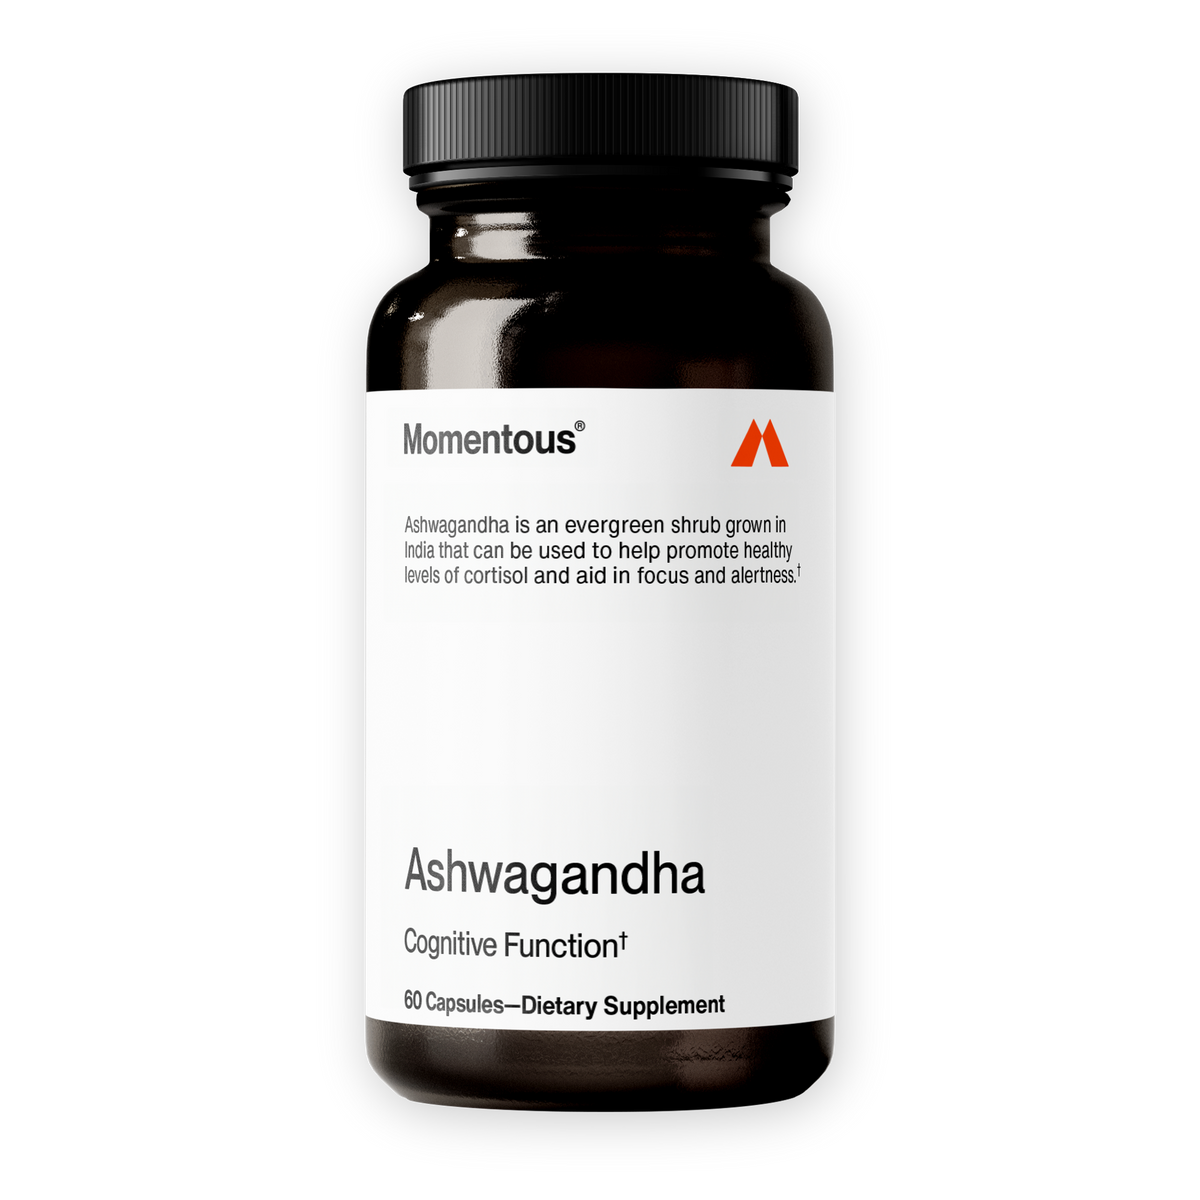 image of Ashwagandha pill bottle